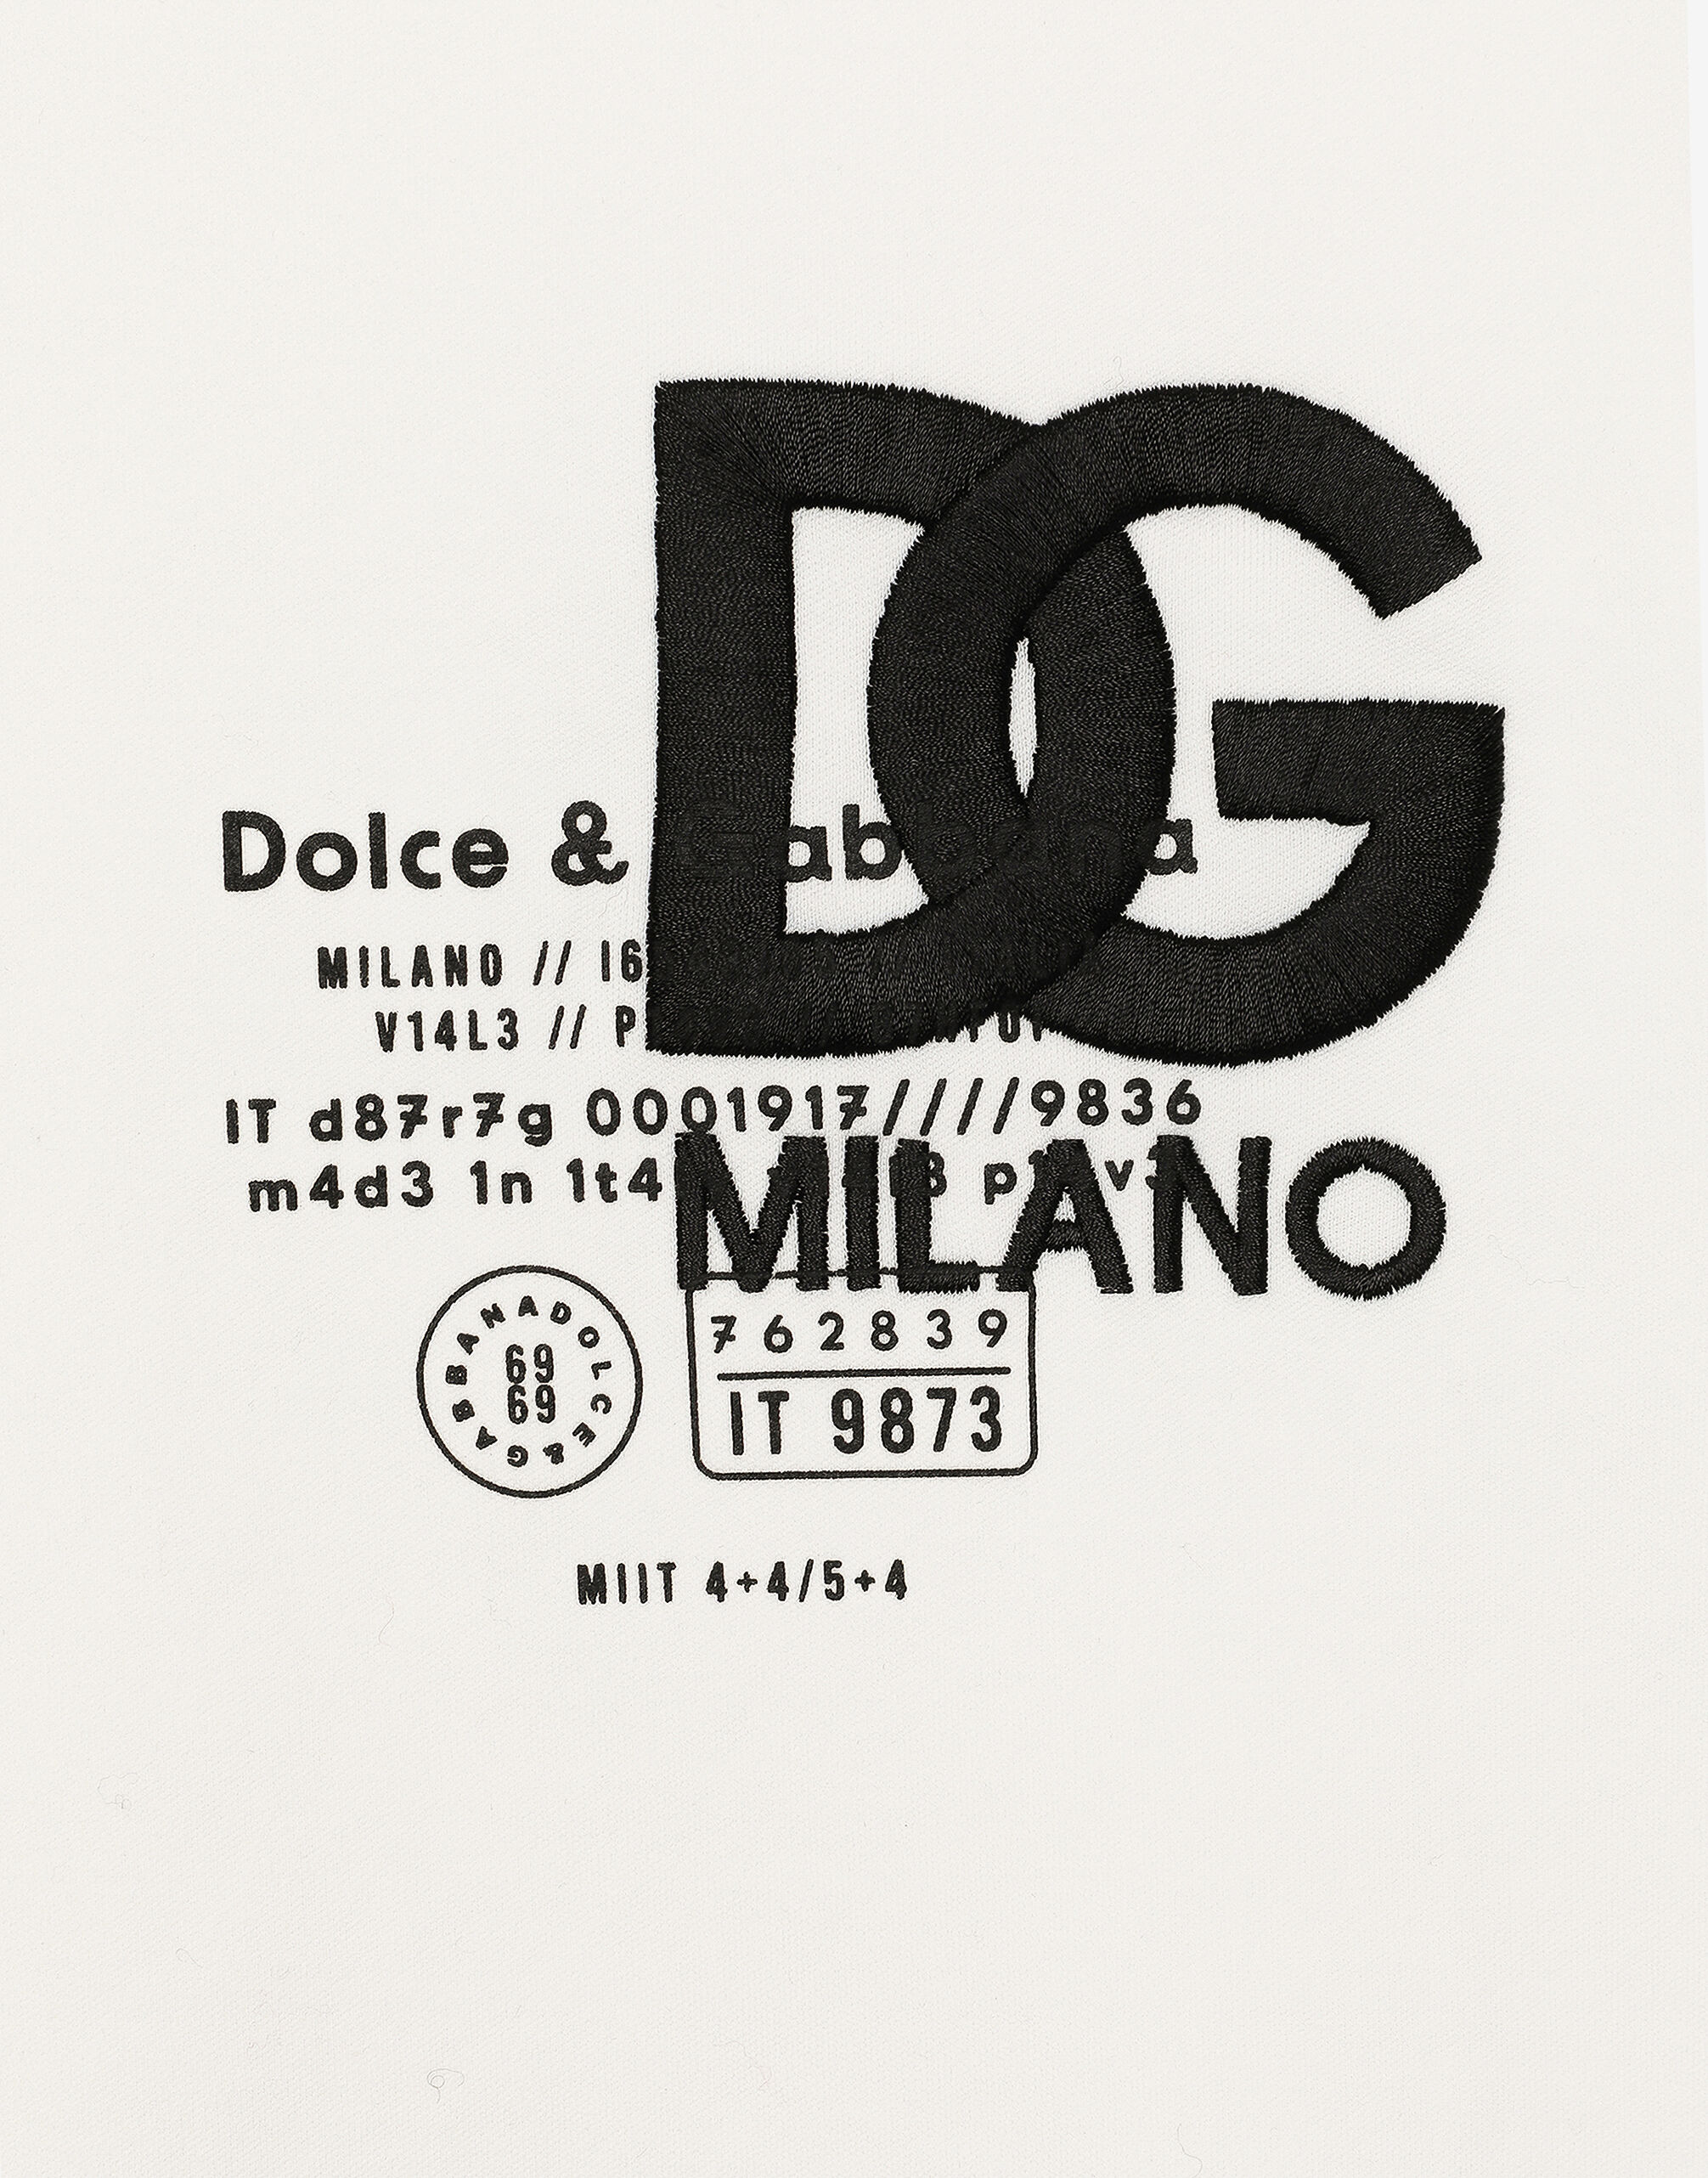 DOLCE&GABBANA ミラノ&DGロゴプリント コットン Tシャツ-